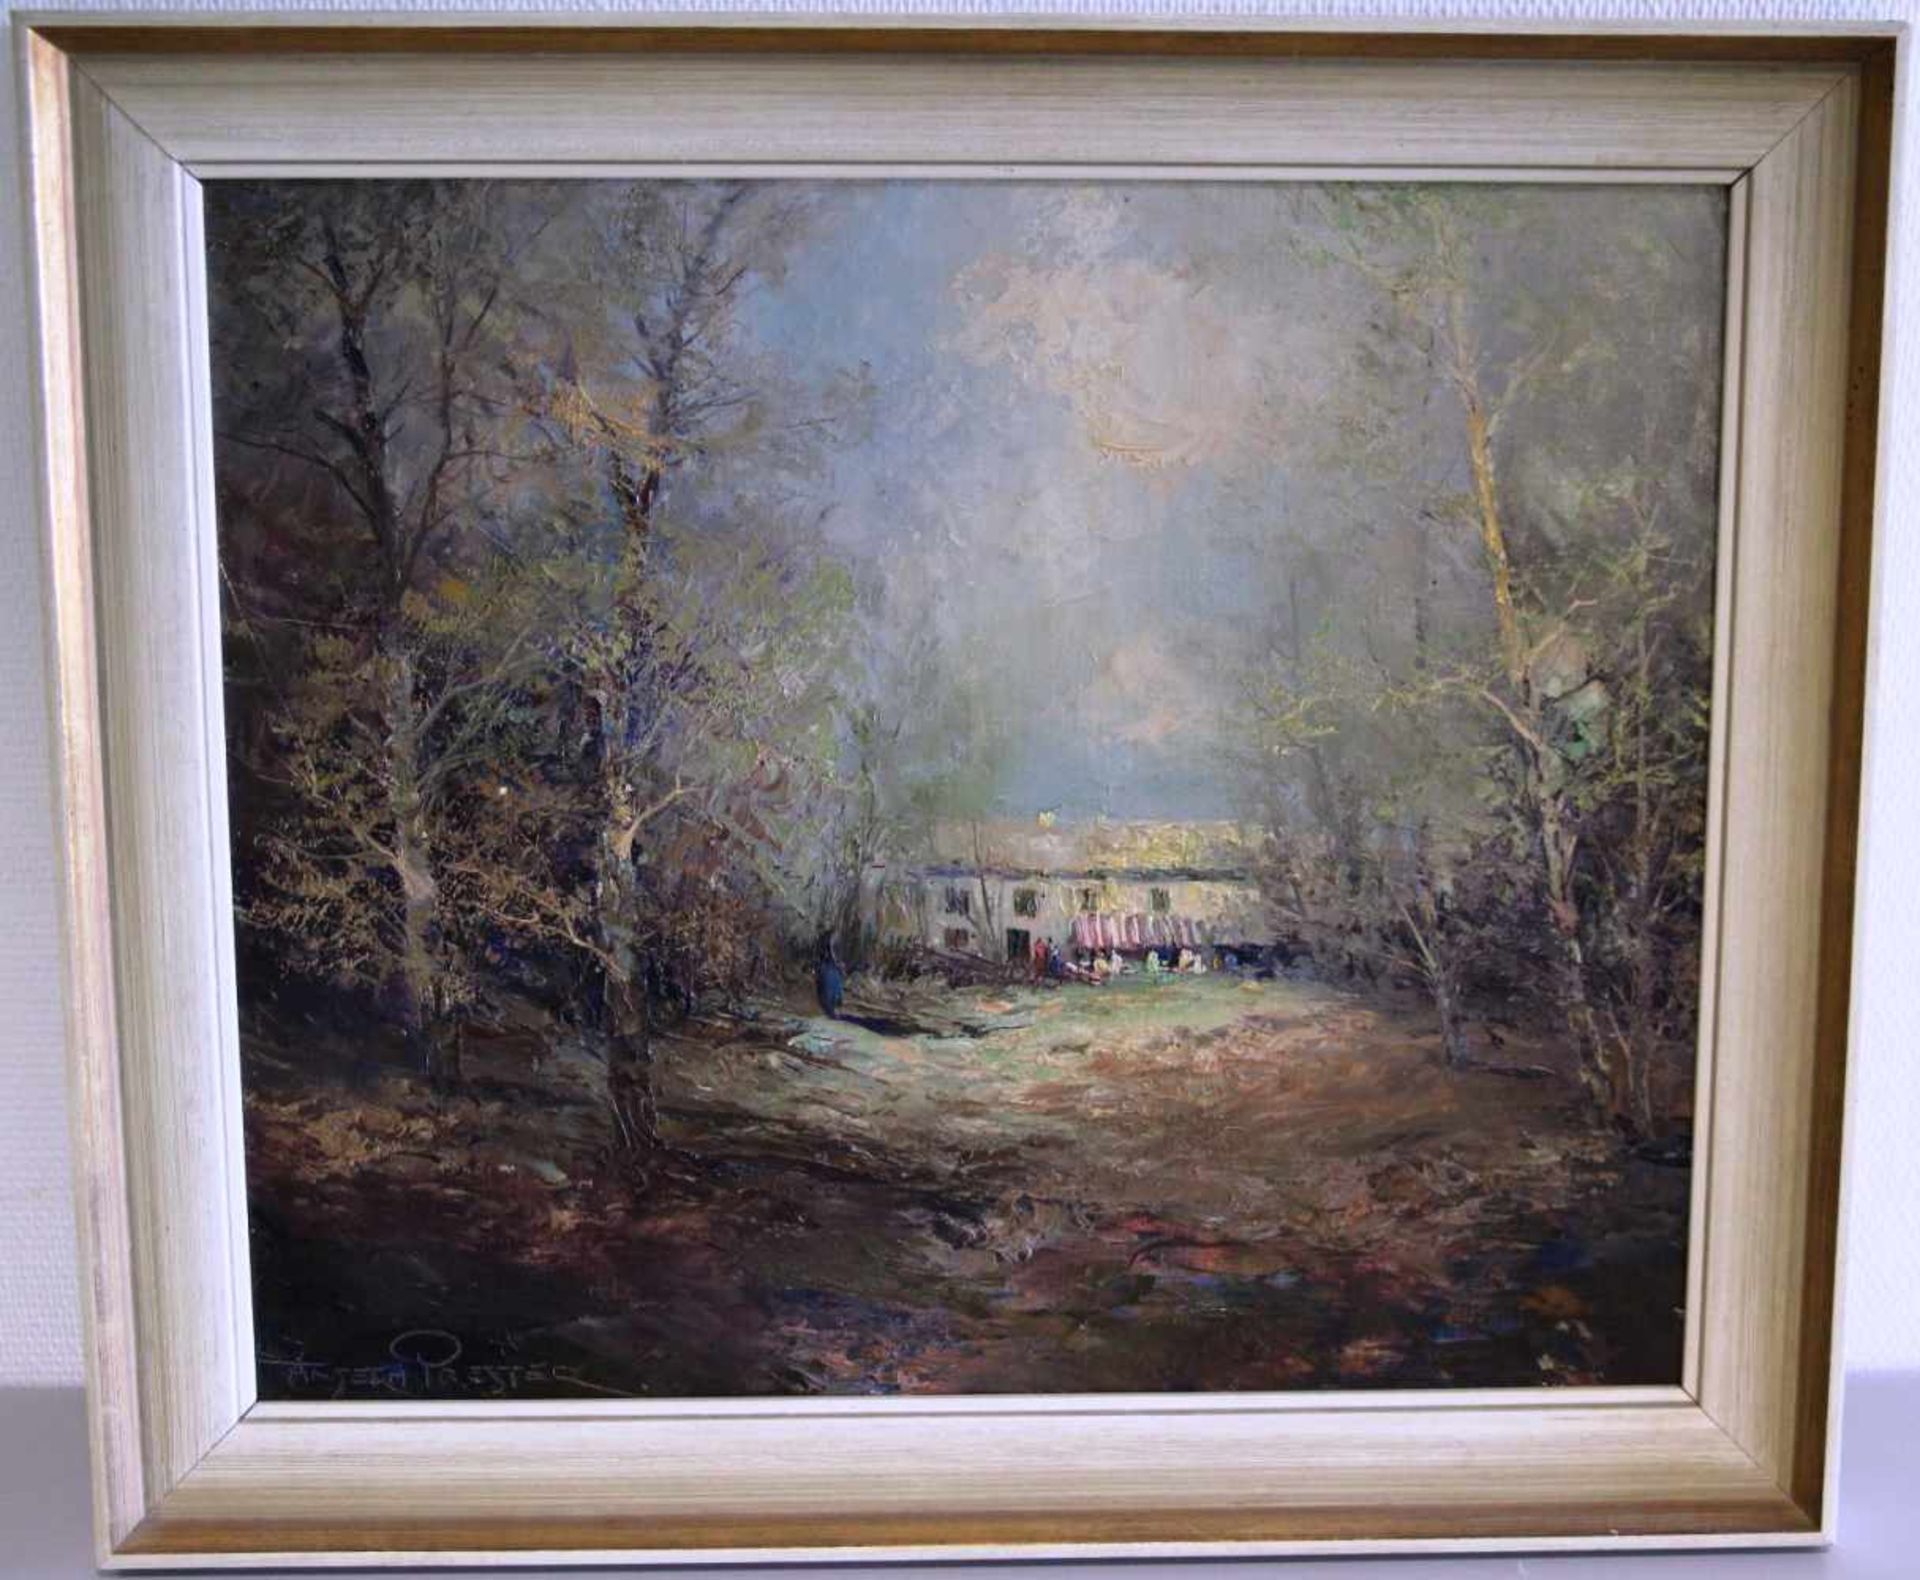 Ölbild A. Presler Ölbild auf Leinwand, Anselm Prester geb 1943 bekannter deutscher Maler, Bauernhof,